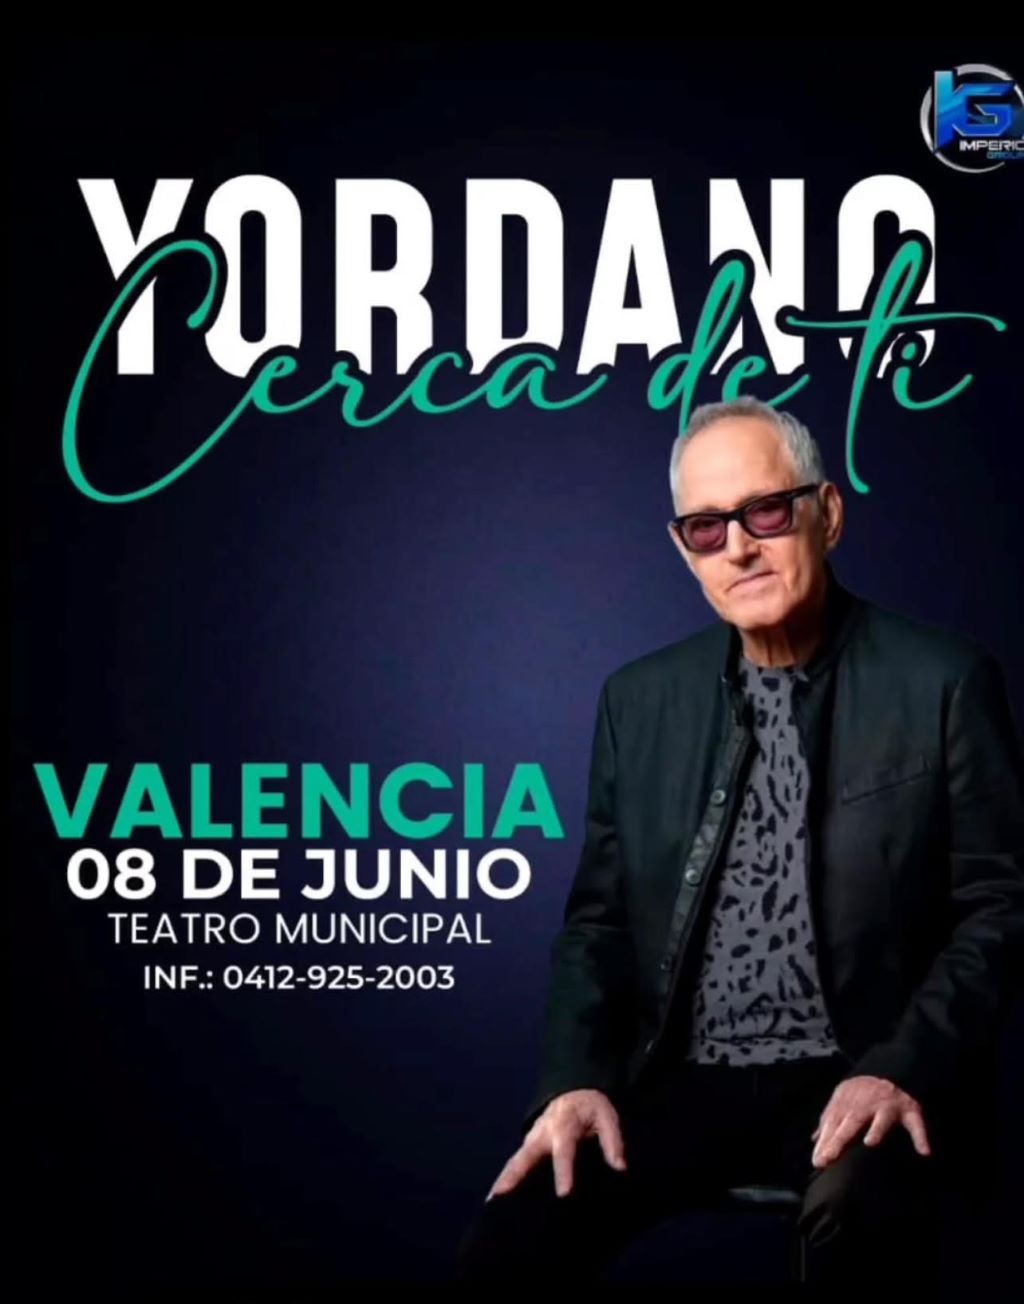 Yordano regresa a Valencia - Agencia Carabobeña de Noticias